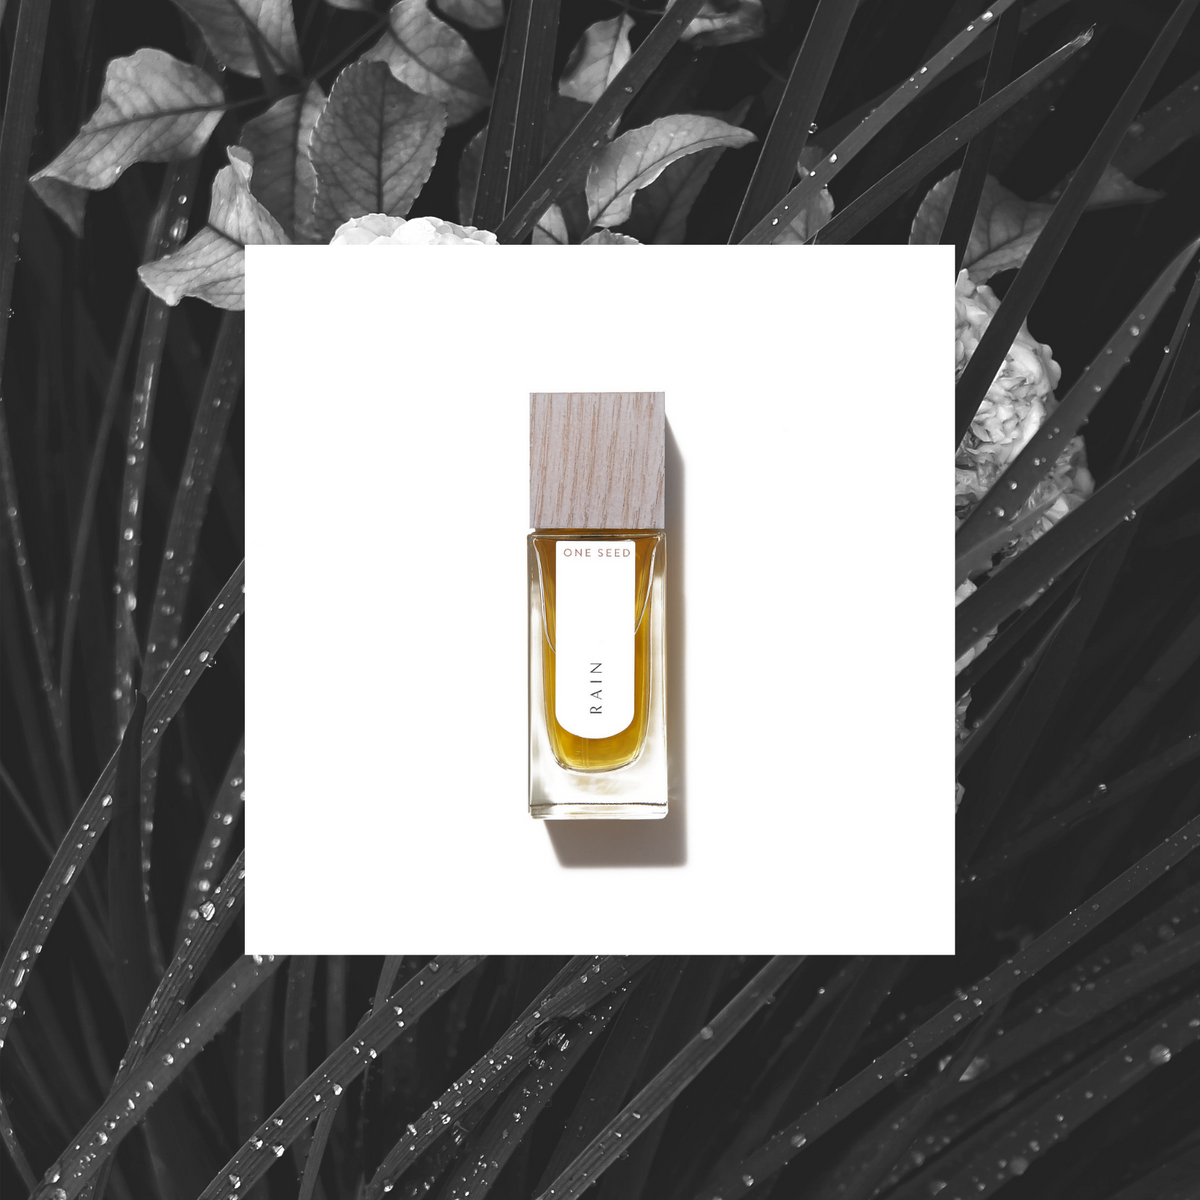 One Seed - Rain eau de parfum 30ml - The Bare Theory